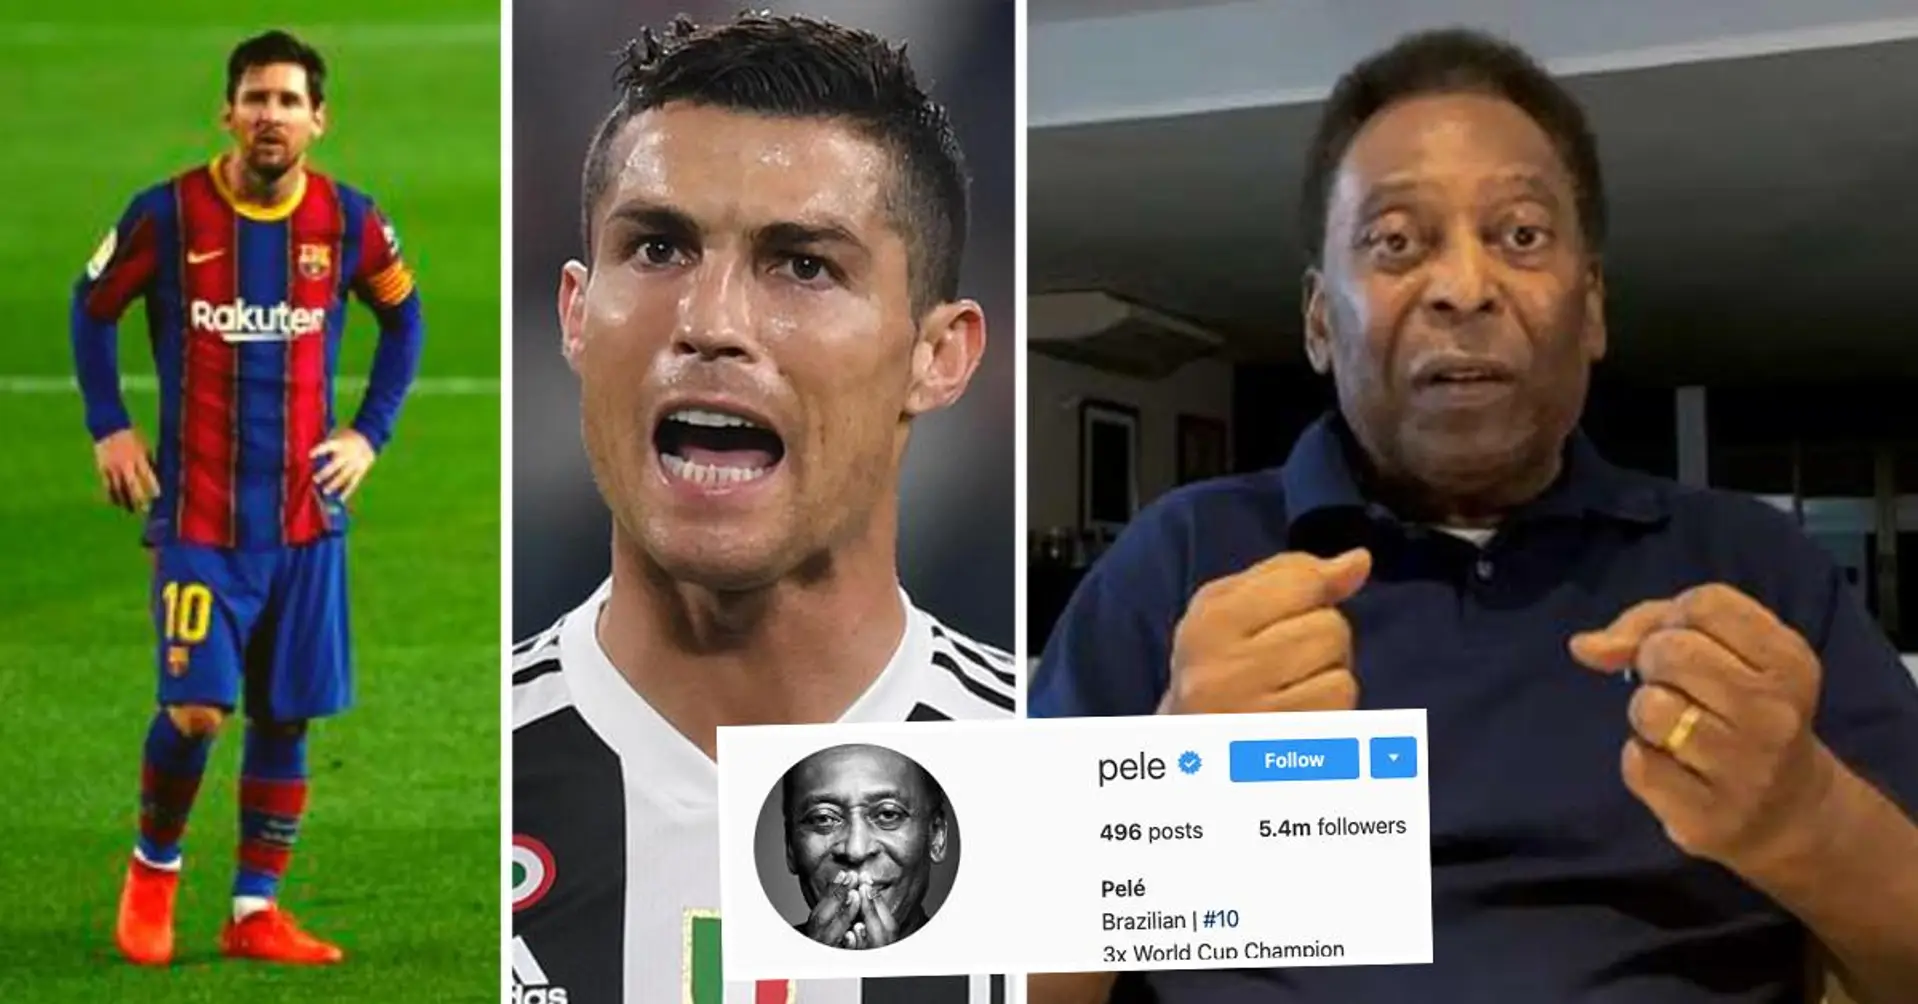 "Er ist unverschämt": Pele reagiert auf die neuesten Torrekorde von Messi und Ronaldo